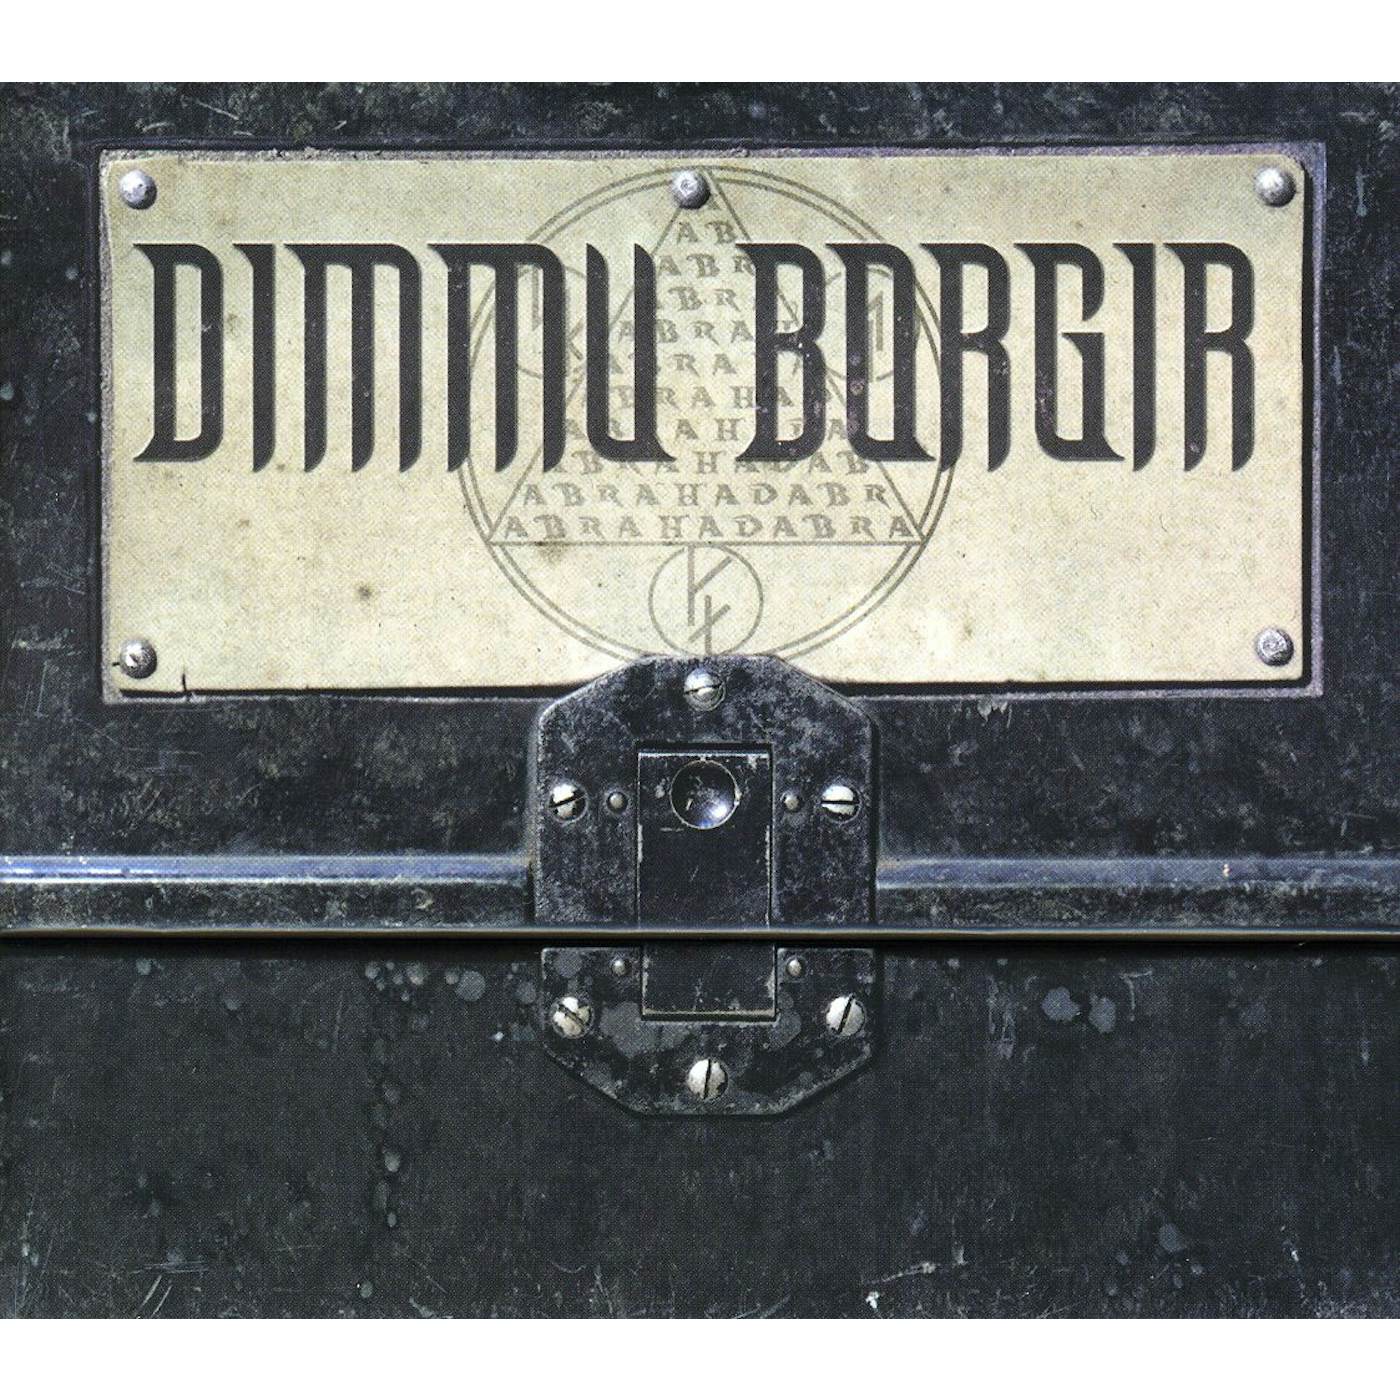 Dimmu Borgir ABRAHDABRA DELUX BOX CD